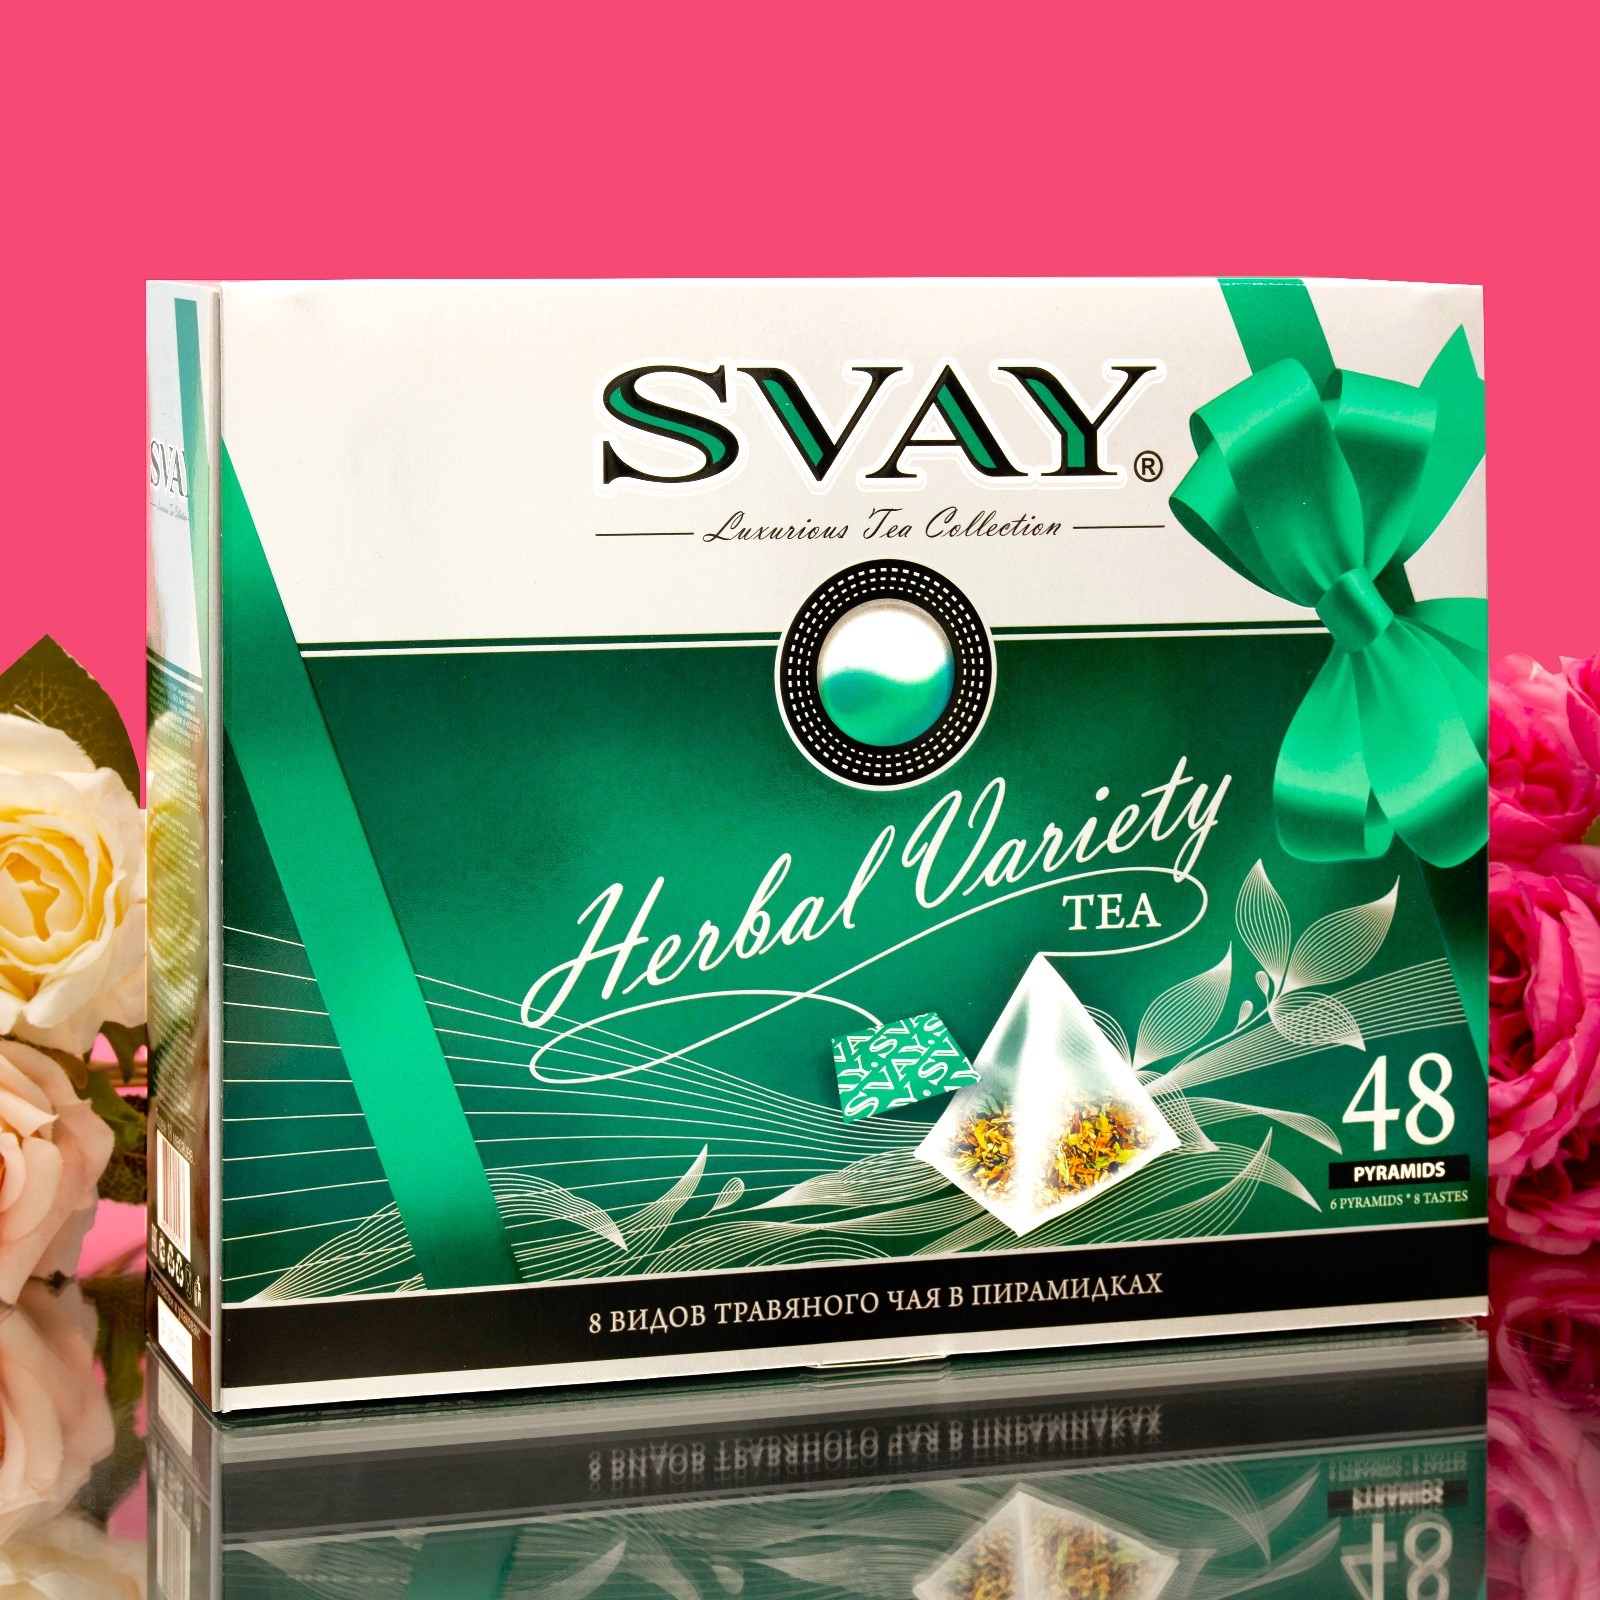 Набор чая Svay herbal variety 8 видов травянного чая 48 пакетиков